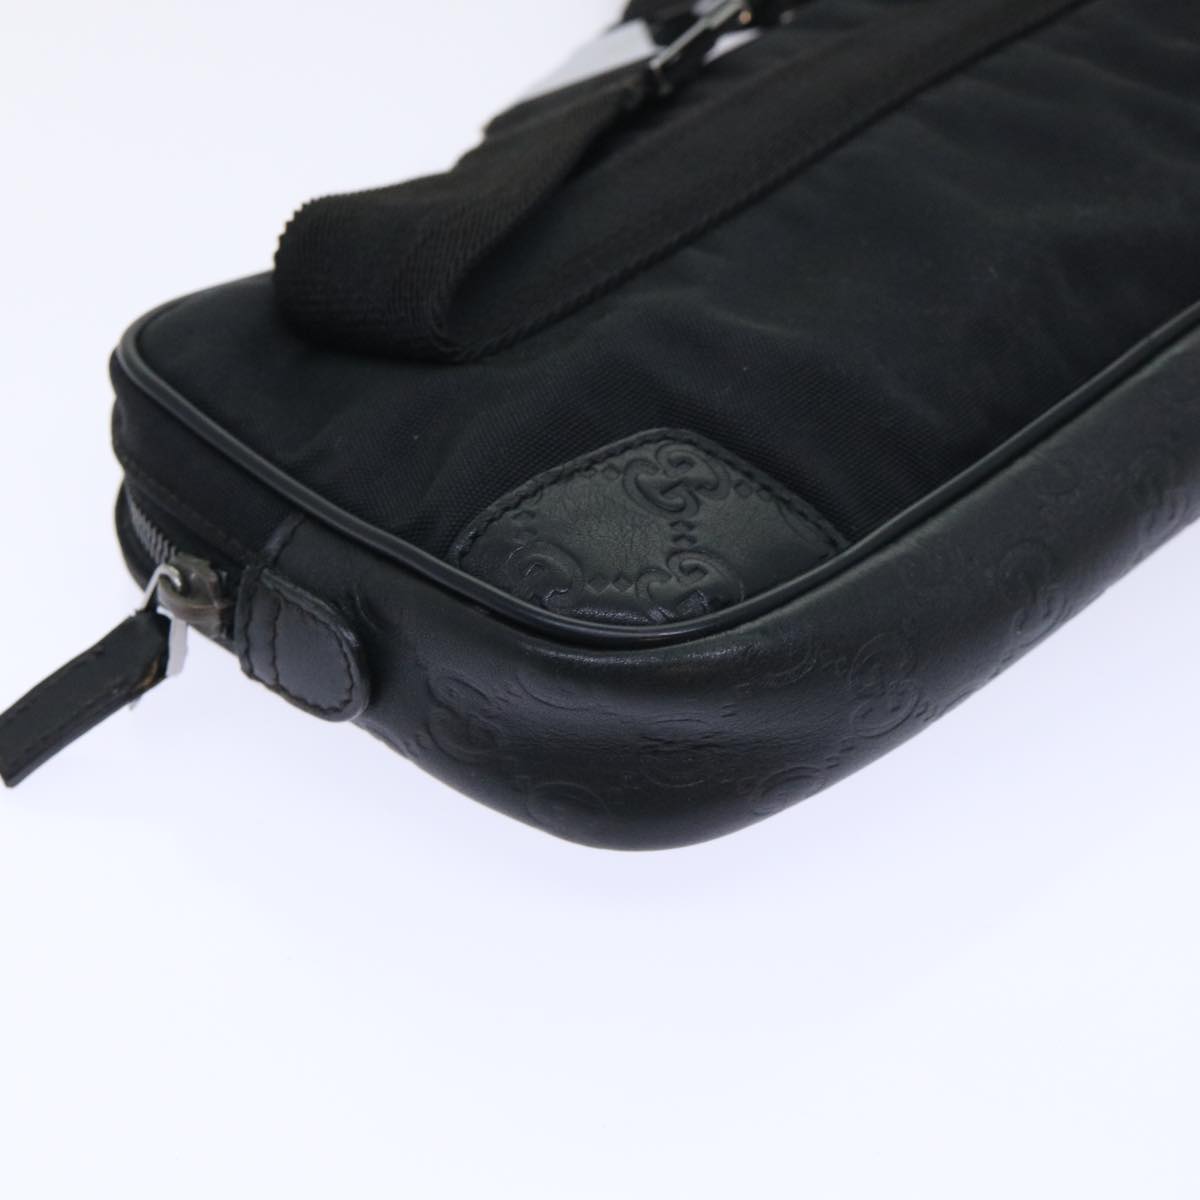 GUCCI Guccissima Waist bag Nylon Leather Black 162417 Auth tb905